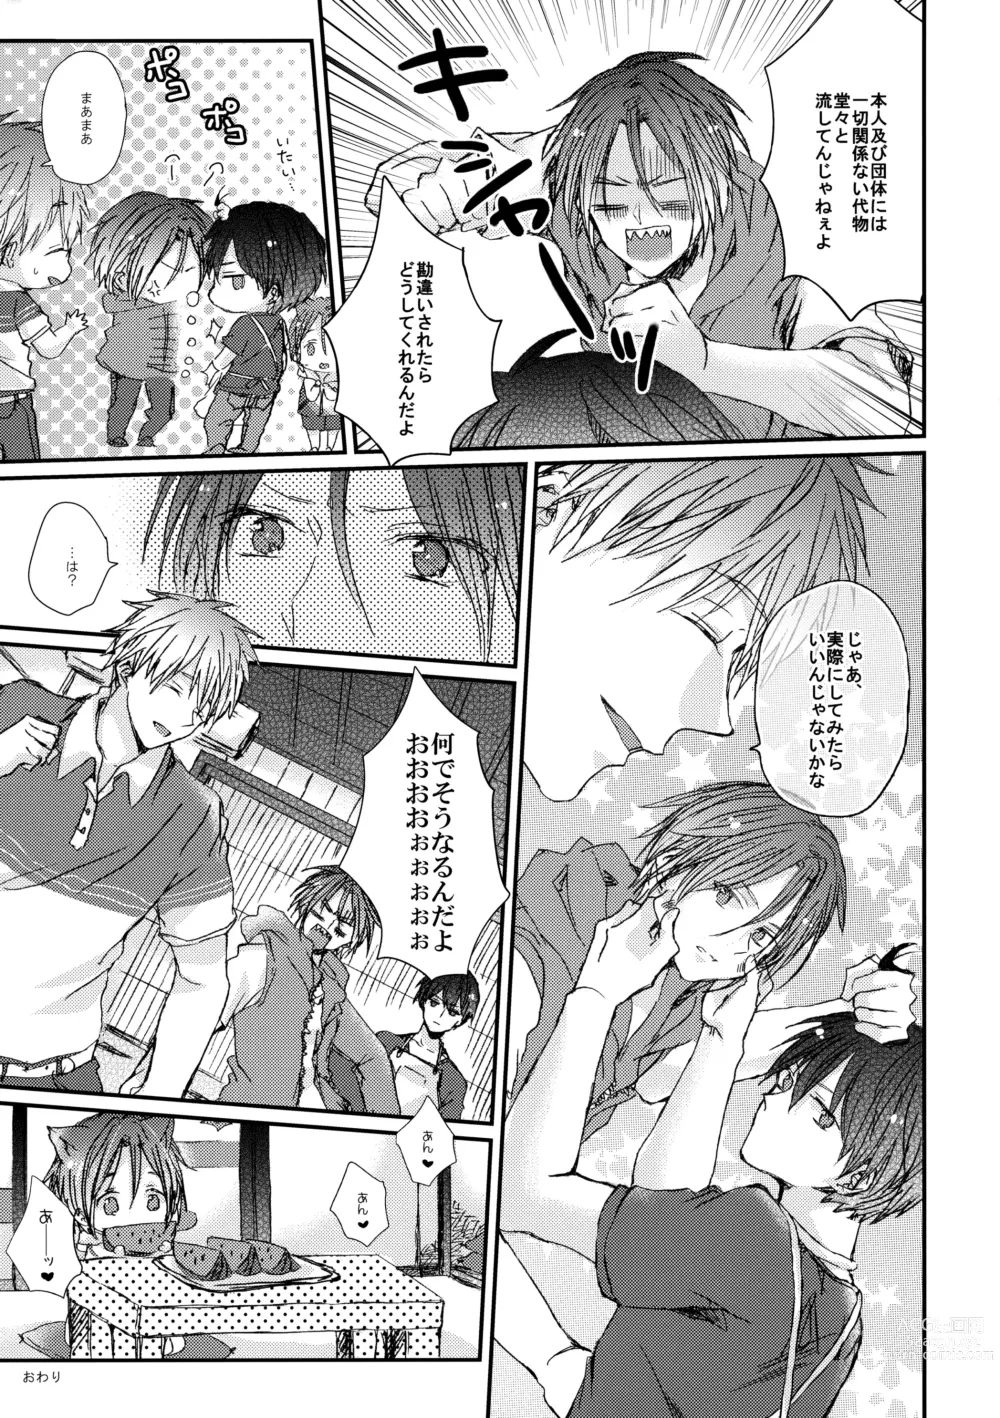 Page 16 of doujinshi Rin-chan nau!